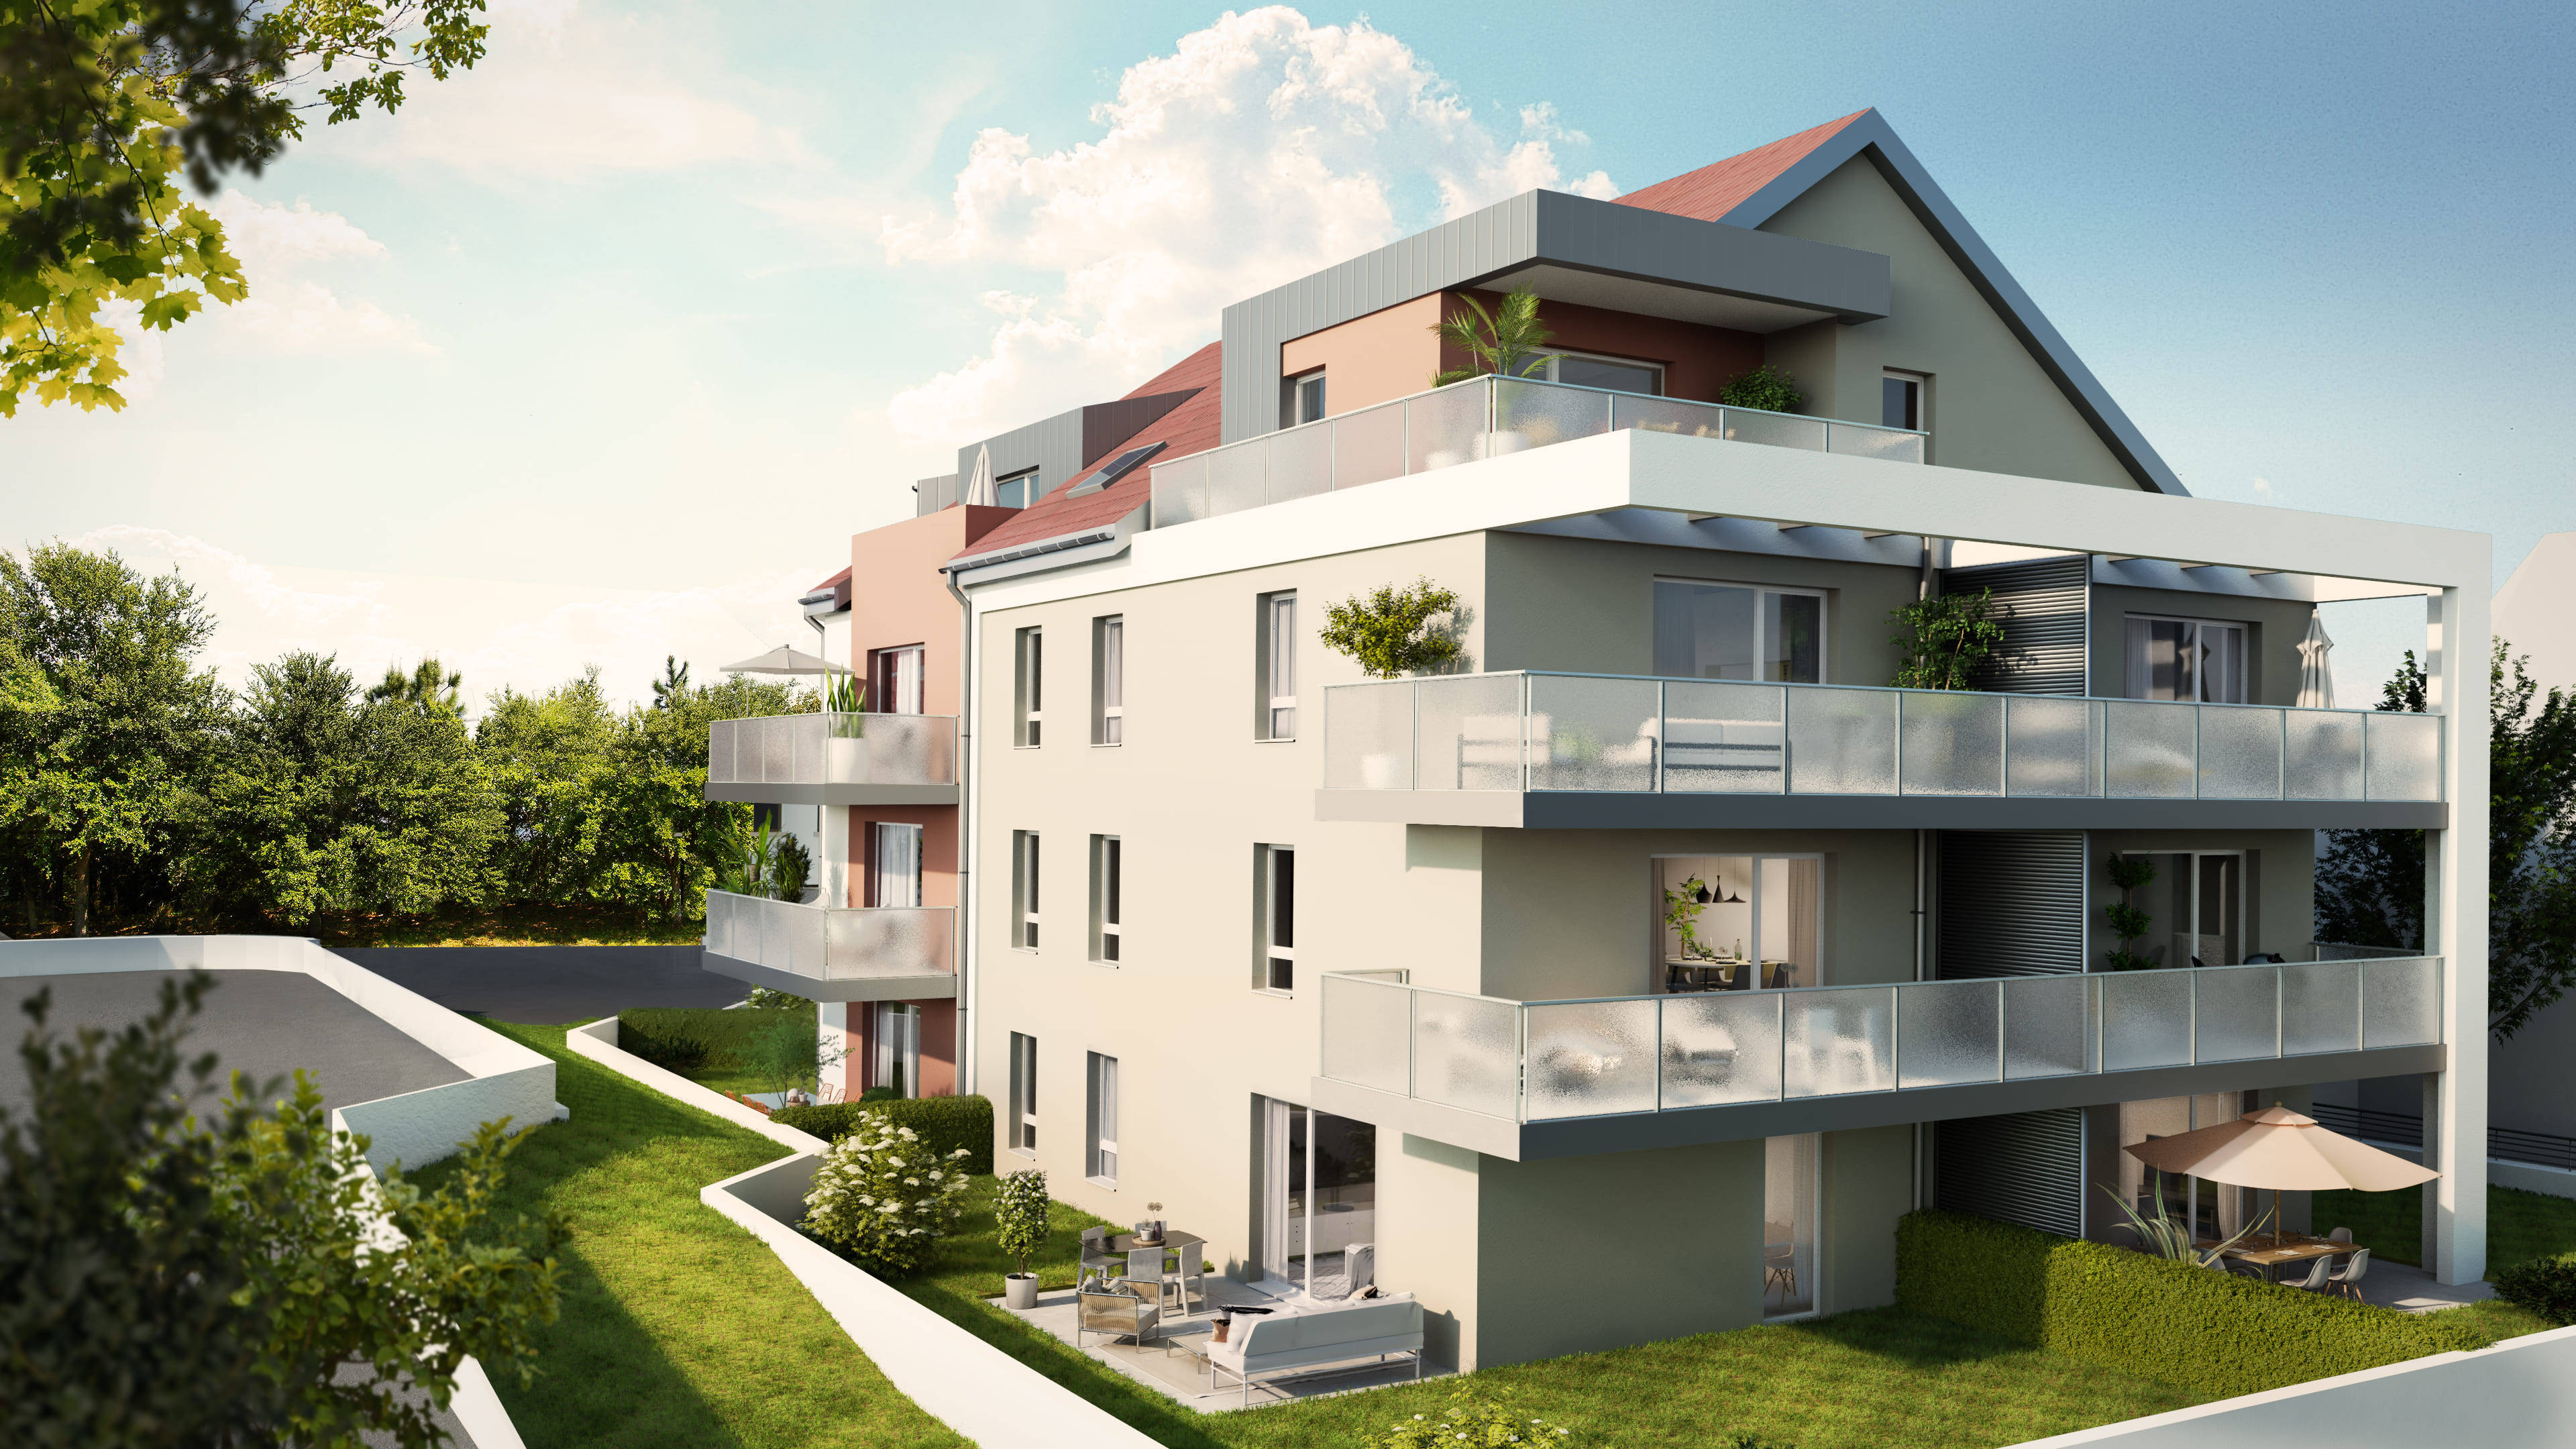 Programme immobilier neuf Sierentz adossée aux collines du Sundgau